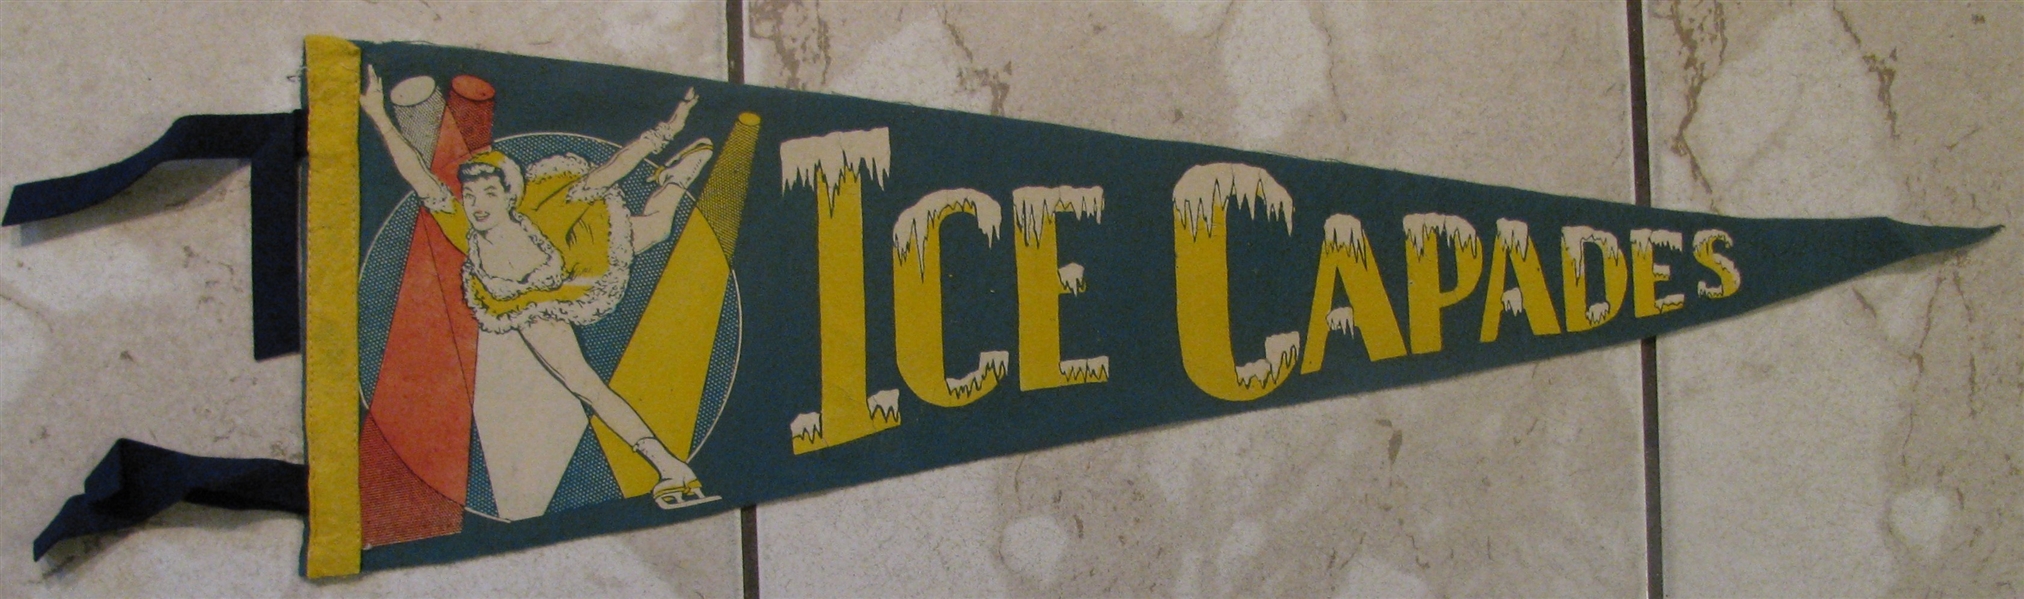 VINTAGE 50's ICE CAPADES PENNANT